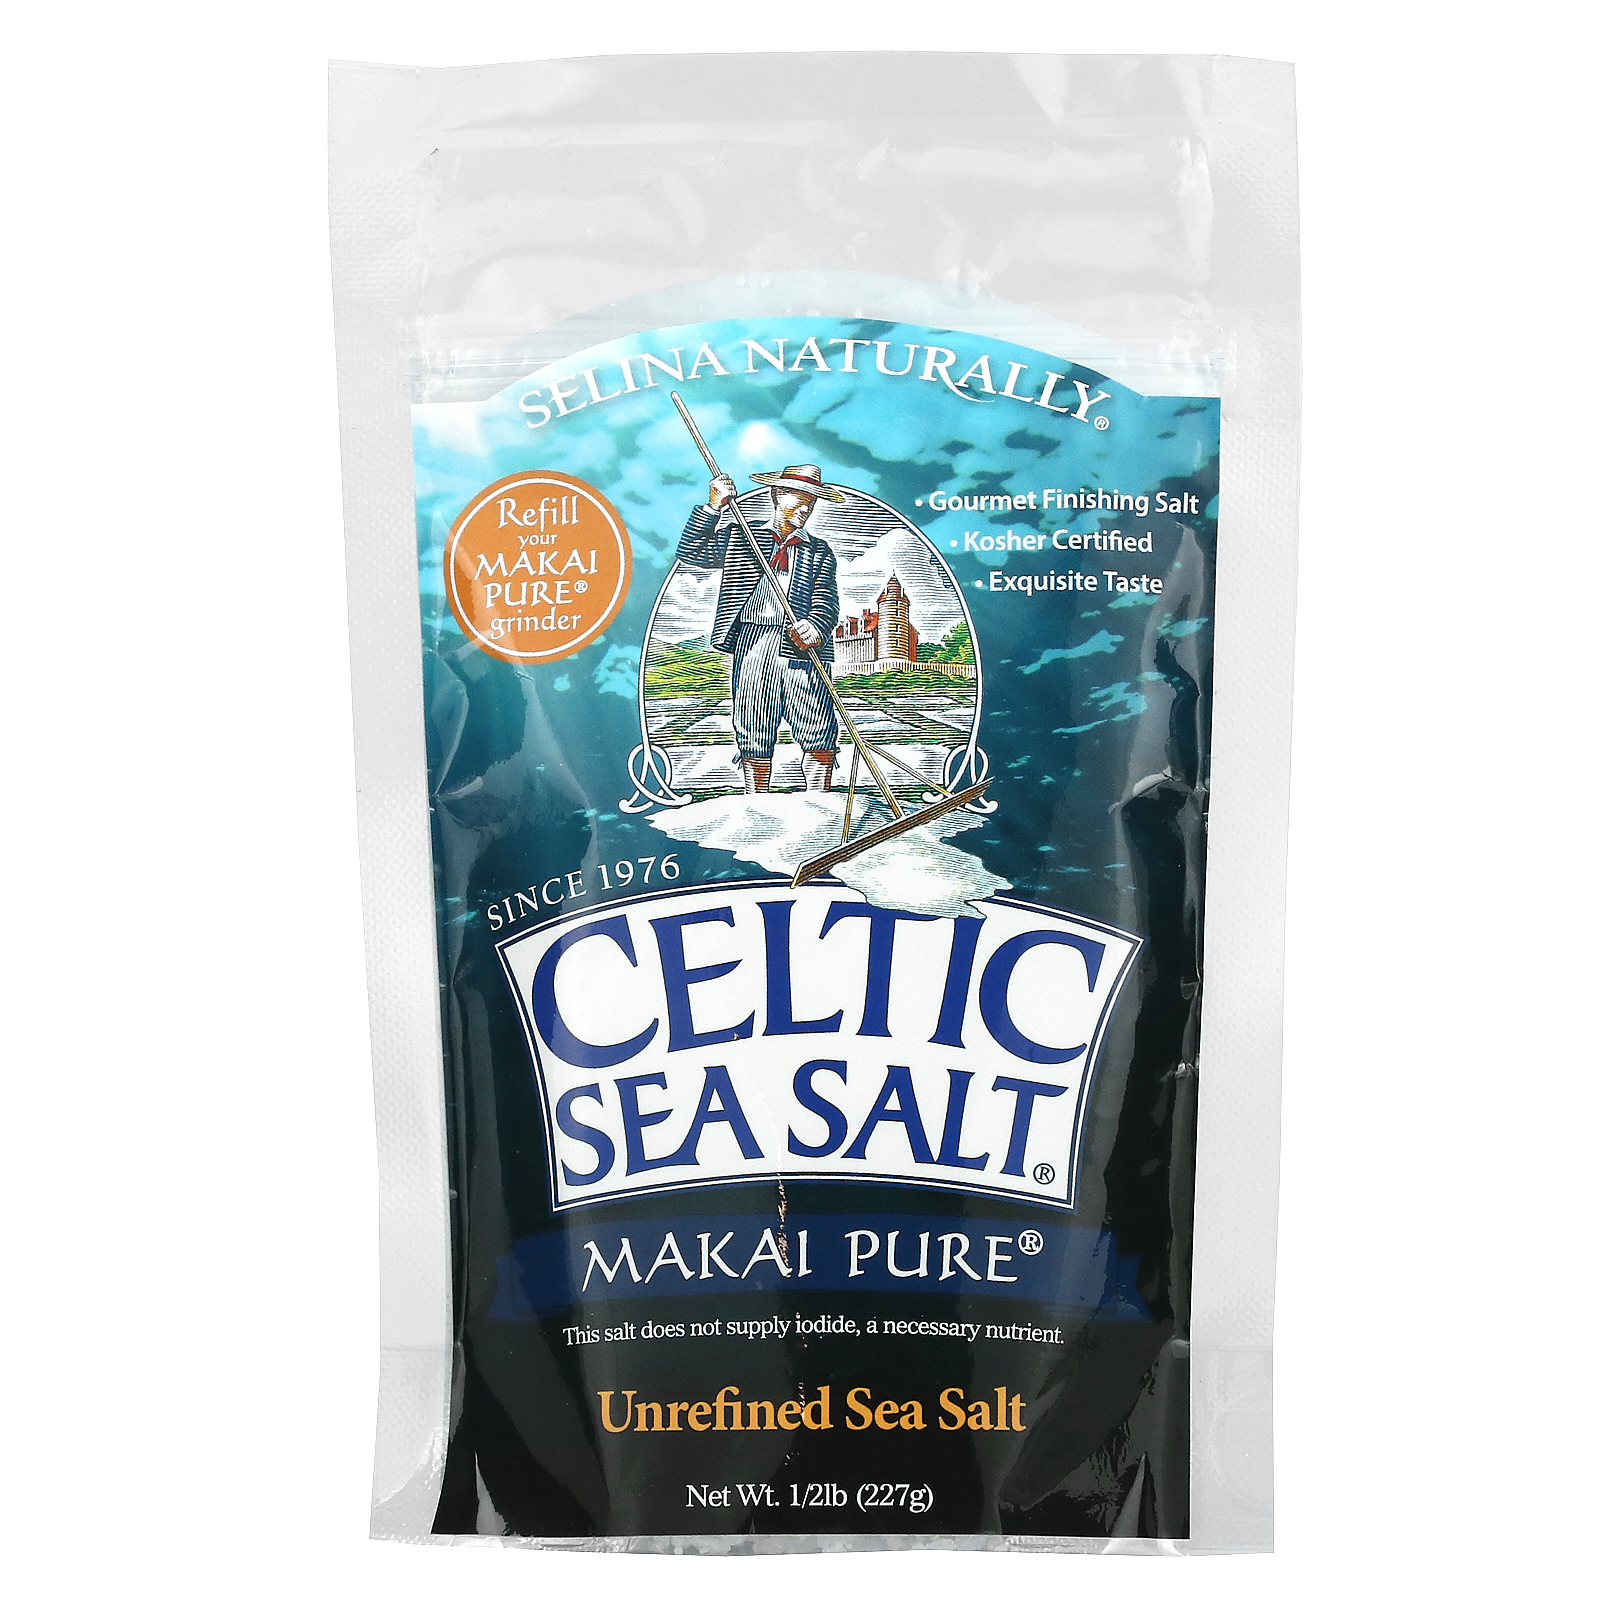 Celtic Sea Salt Makai Pure Unrefined Sea Salt 12 Lb 227 G Iherb